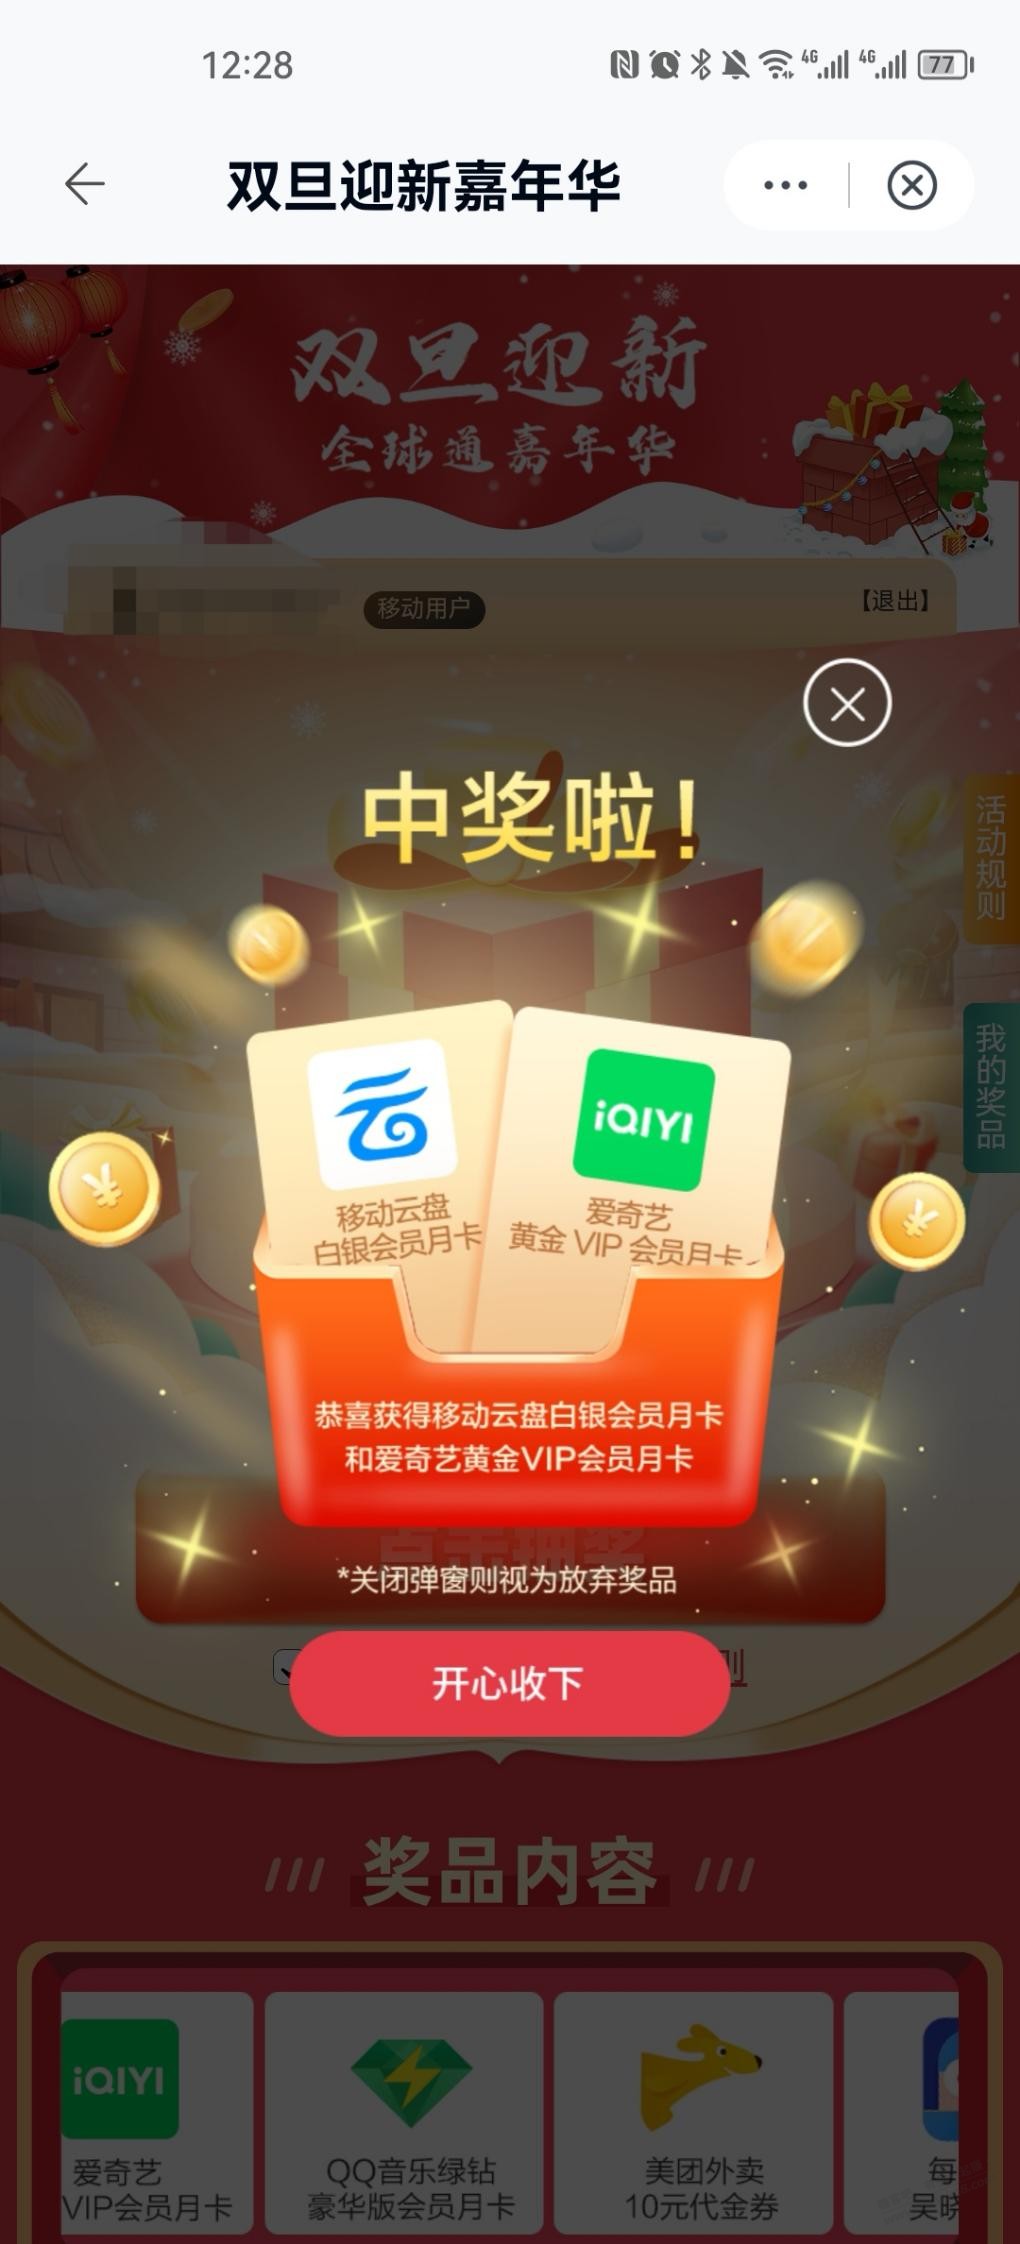 中国移动云盘app 大概率爱奇艺月卡